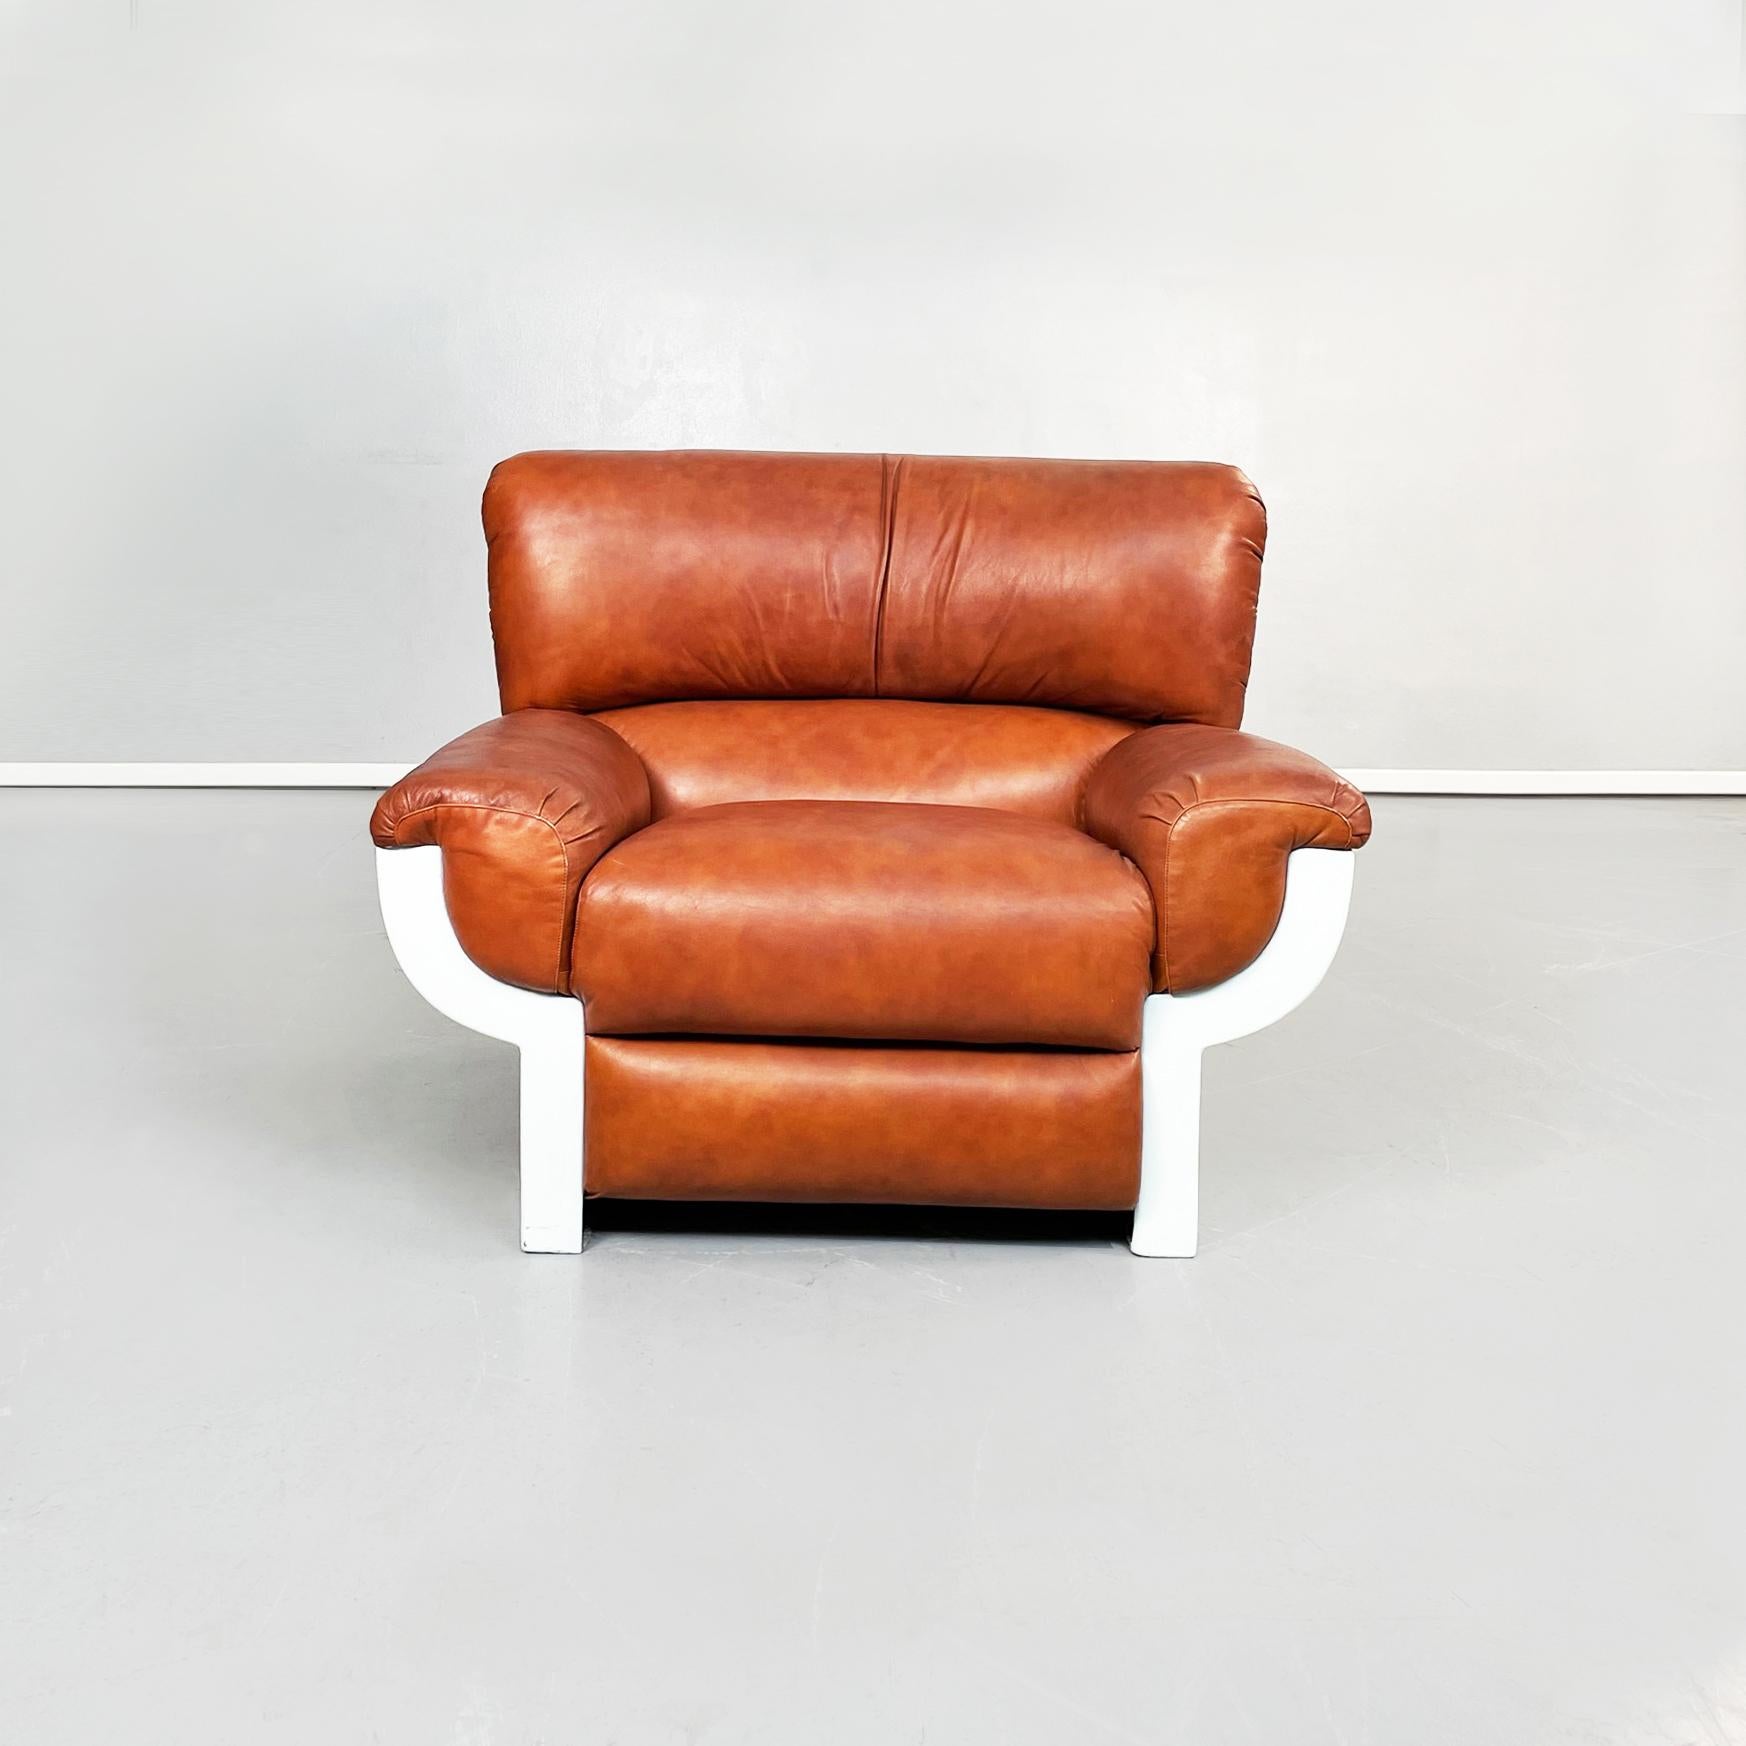 Italienische Sessel aus braunem Leder und Kunststoff aus der Mitte des Jahrhunderts Flou von Betti für Habitat Ids, 1970er Jahre
Paar Sessel mod. Flou. Der rechteckige Sitz besteht aus einem gepolsterten Kissen, das mit cognacbraunem Leder bezogen